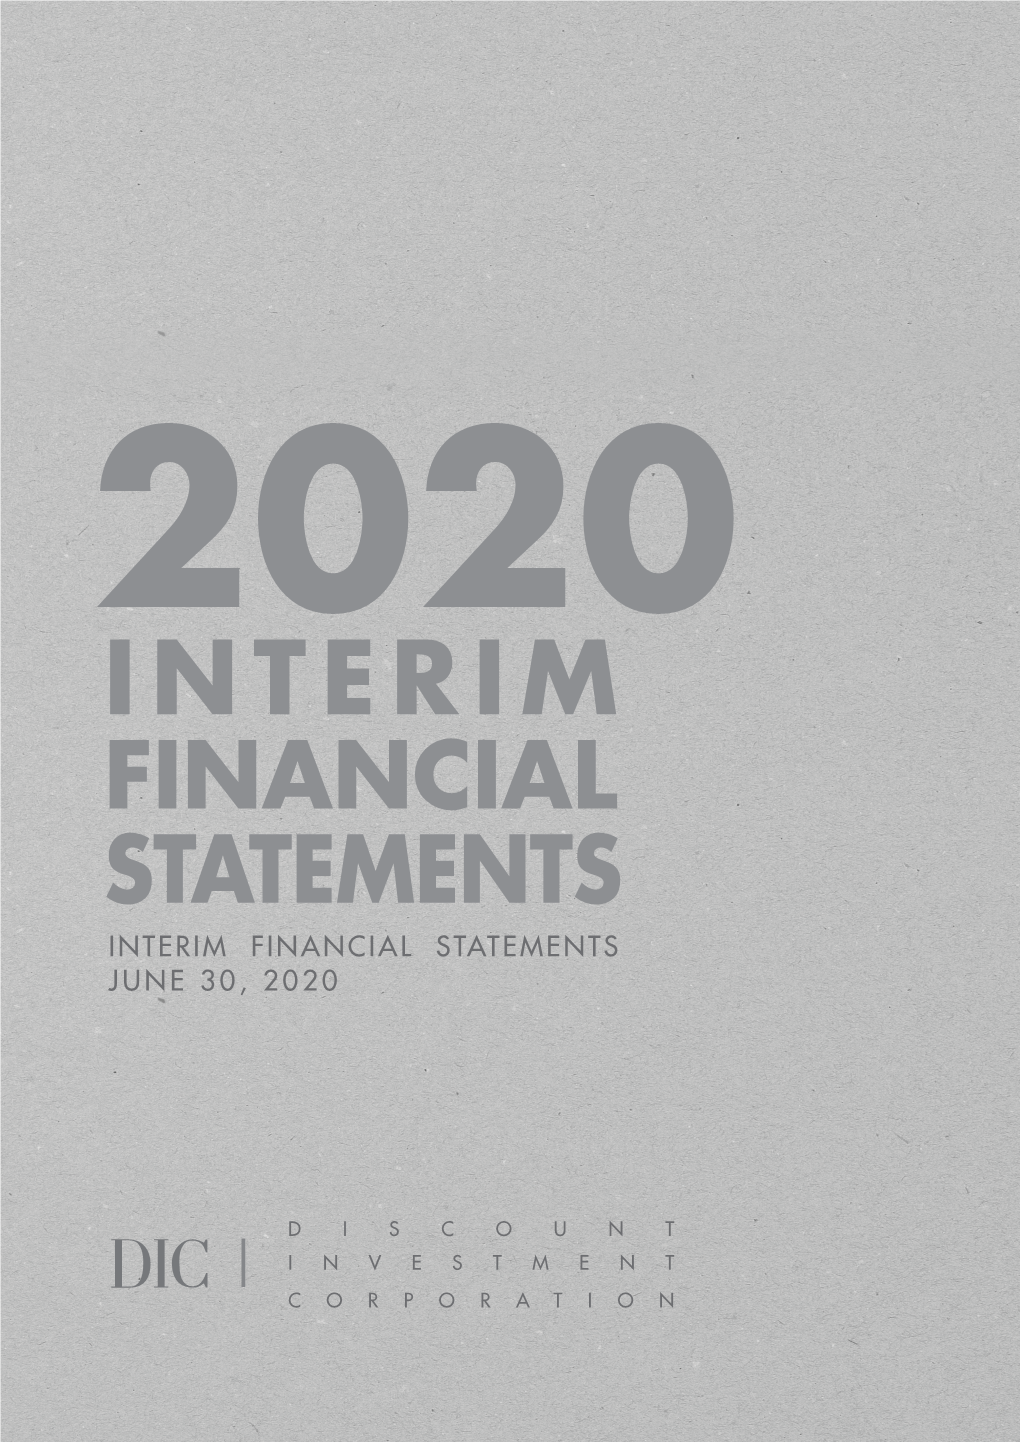 FINANCIAL STATEMENTS Interim FINANCIAL STATEMENTS JUNE 30, 2020